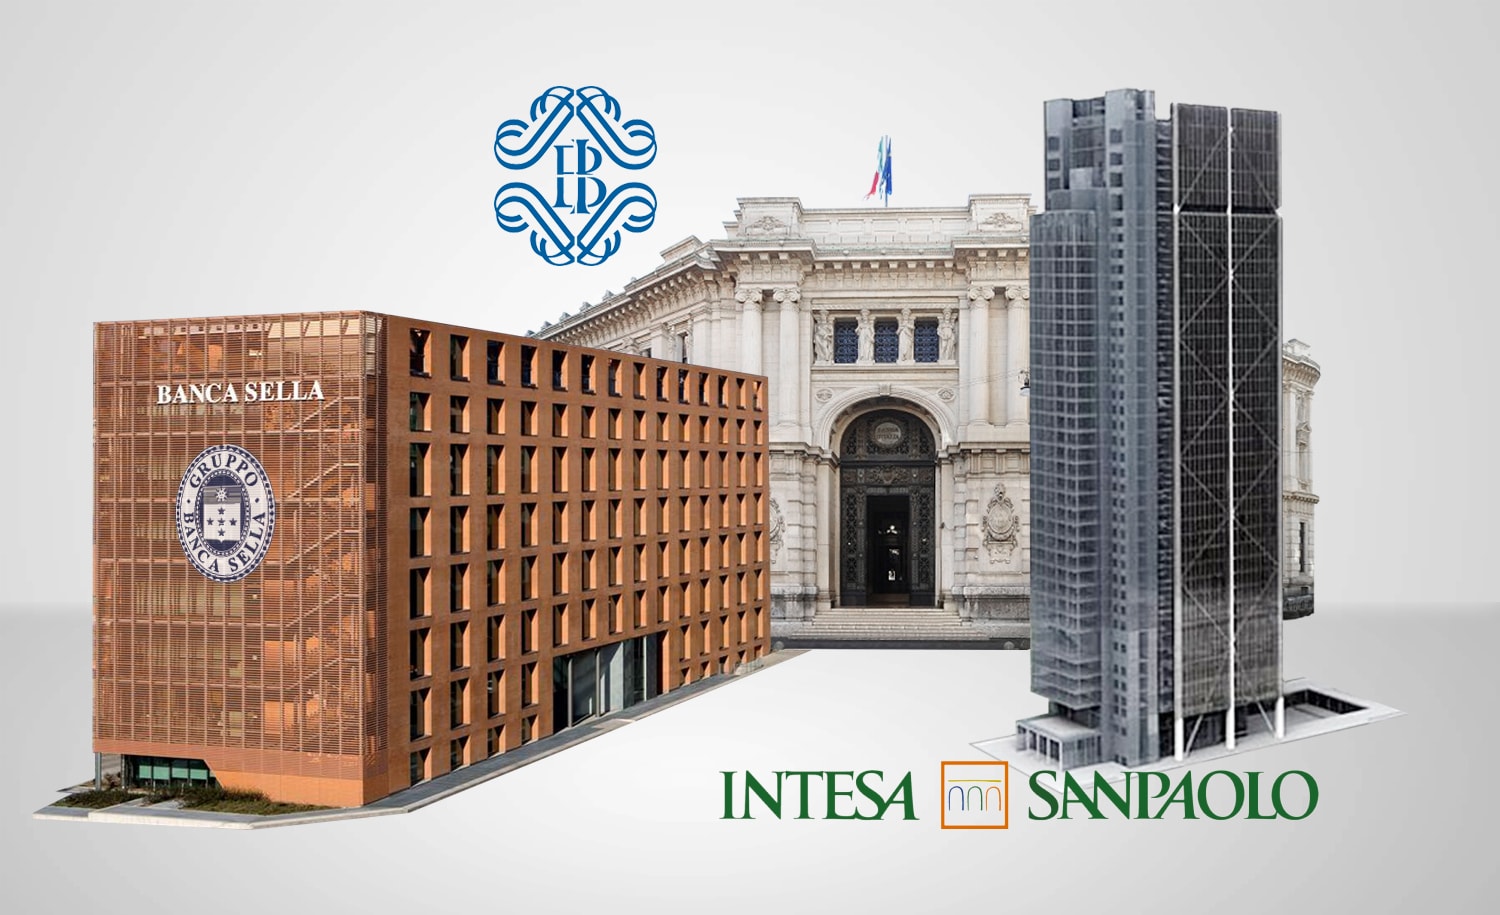 Storia Di Brand Banca D Italia Banca Sella E Intesa San Paolo Ecommerceday